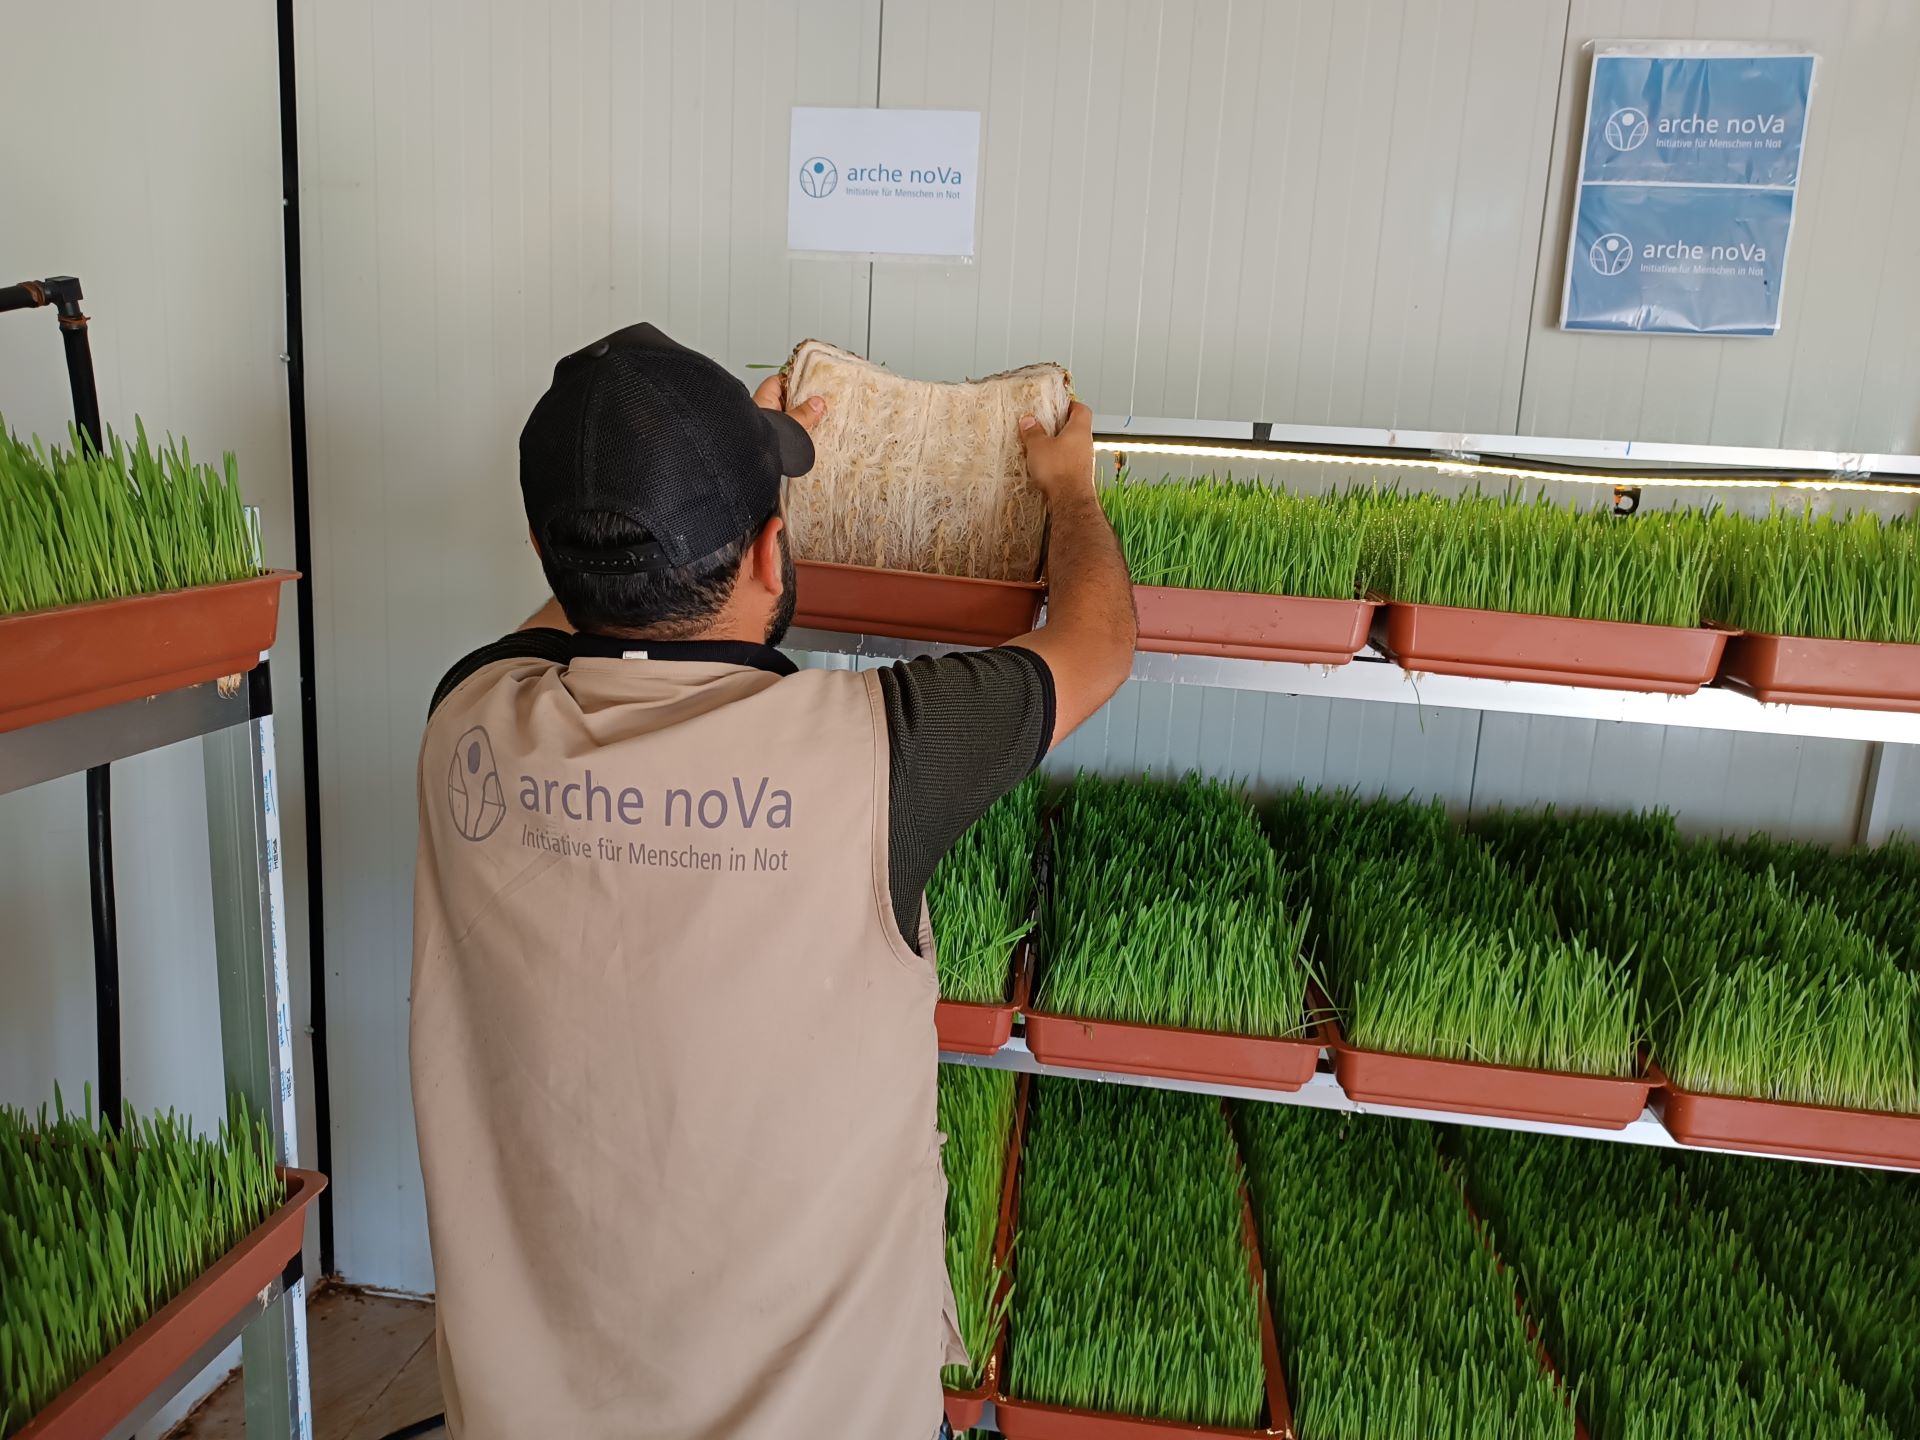 Das Bild zeigt einen Mitarbeiter von arche noVa. Er trägt eine beigefarbene Weste mit Logo und ist von hinten zu sehen. Vor ihm steht ein Regal mit Behältnissen, in denen Futterpflanzen wachsen.